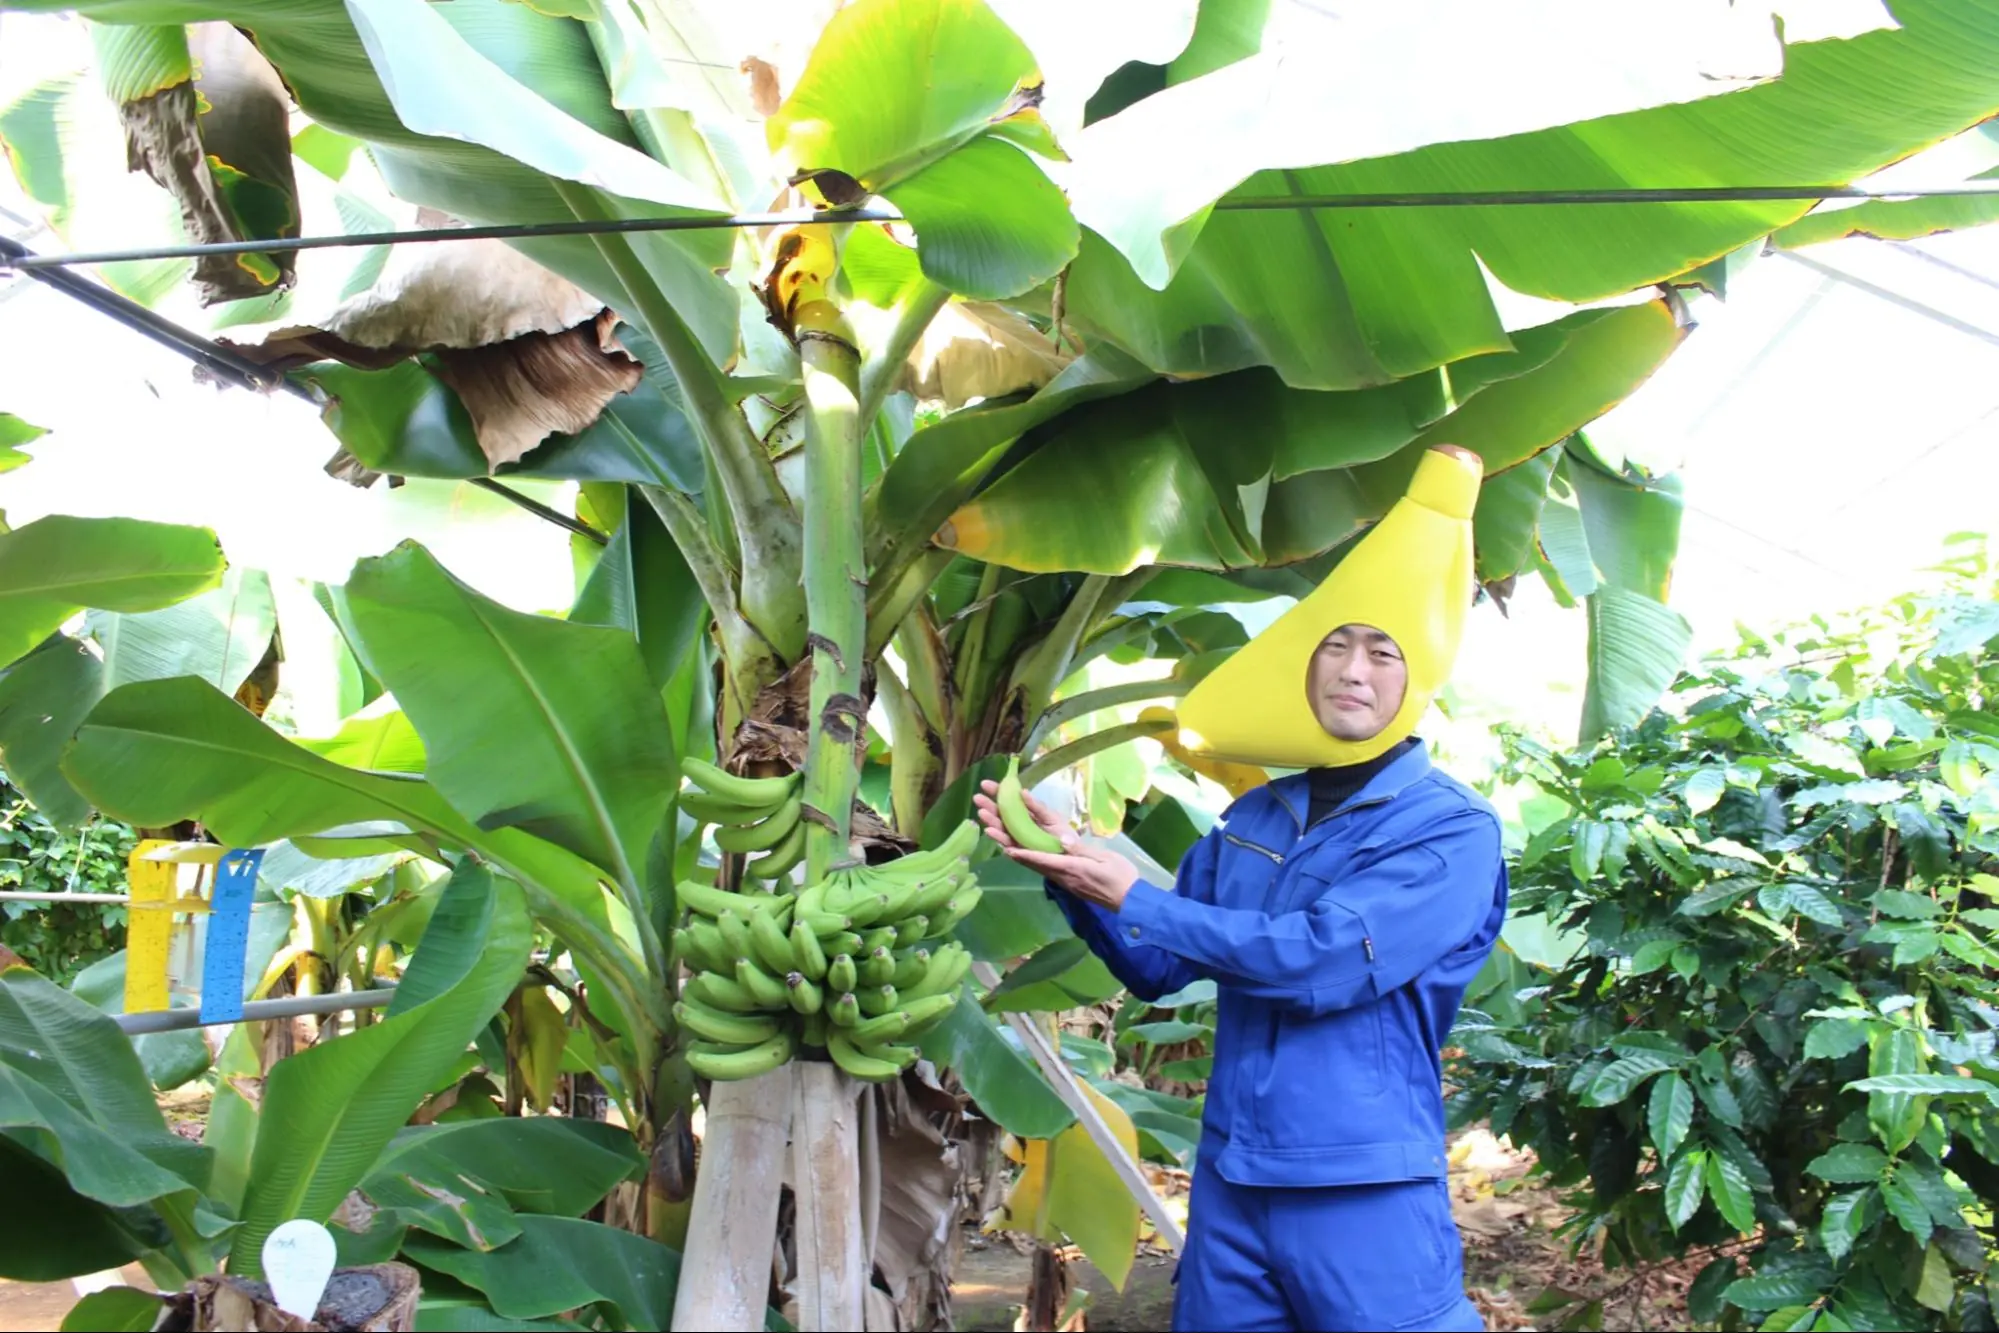 在可以体验日本罕见的香蕉采摘和丛林的“稻泽水果园”感受南国风情吧!